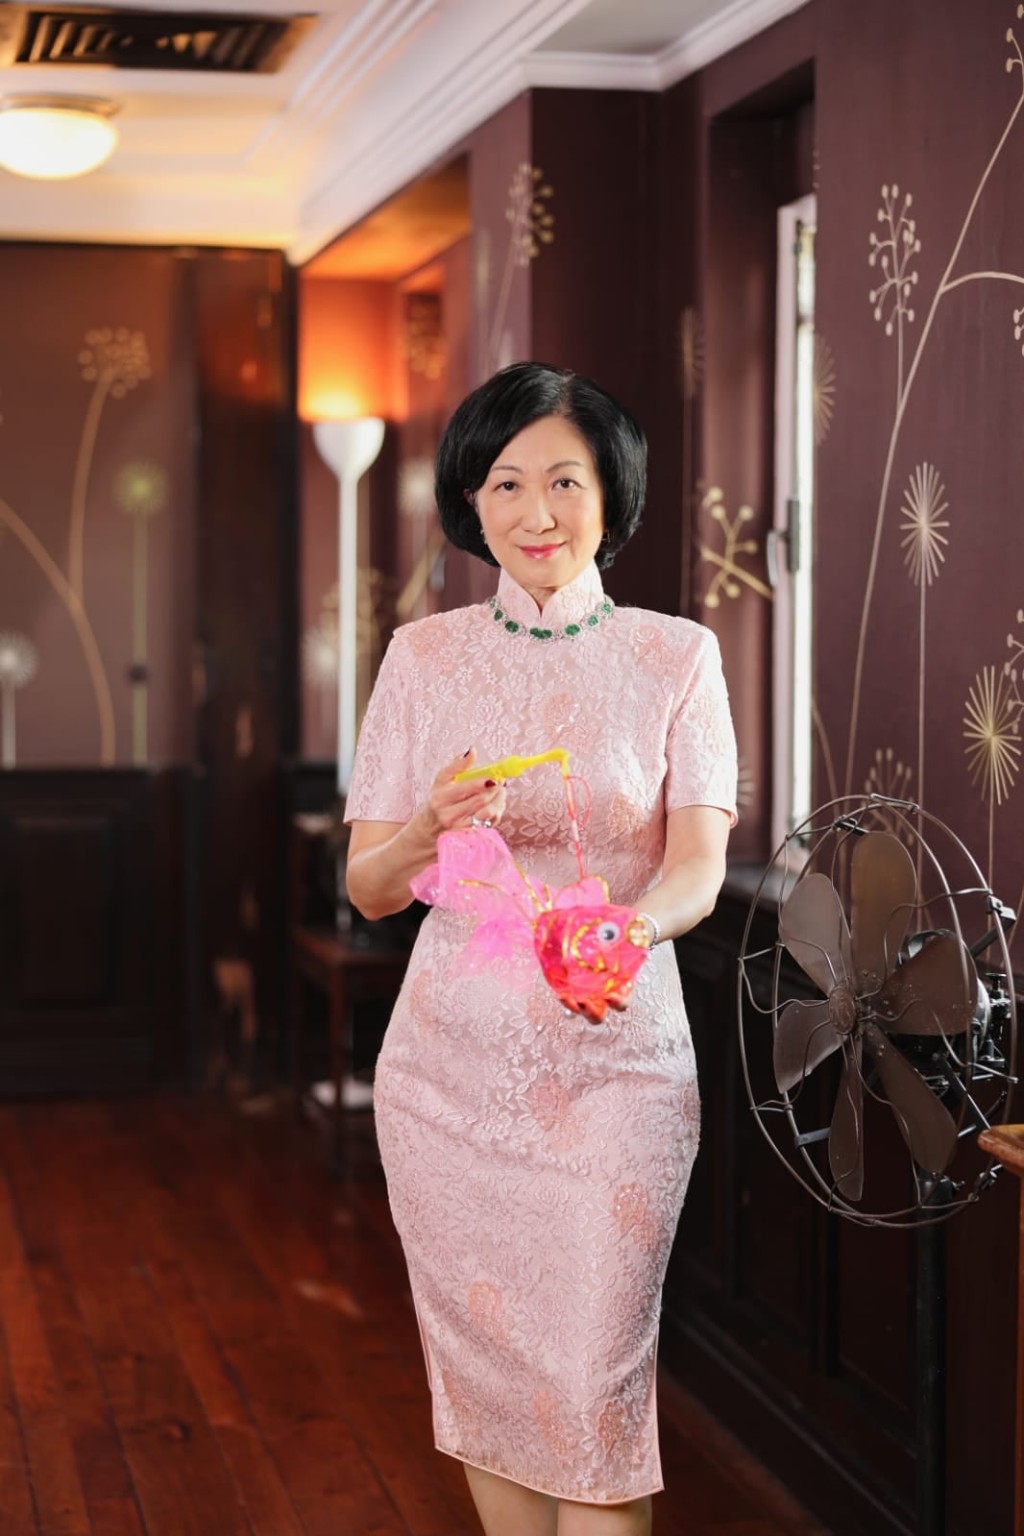 葉劉指曾穿著這套粉紅色旗袍接待不少訪港政要。FB圖片